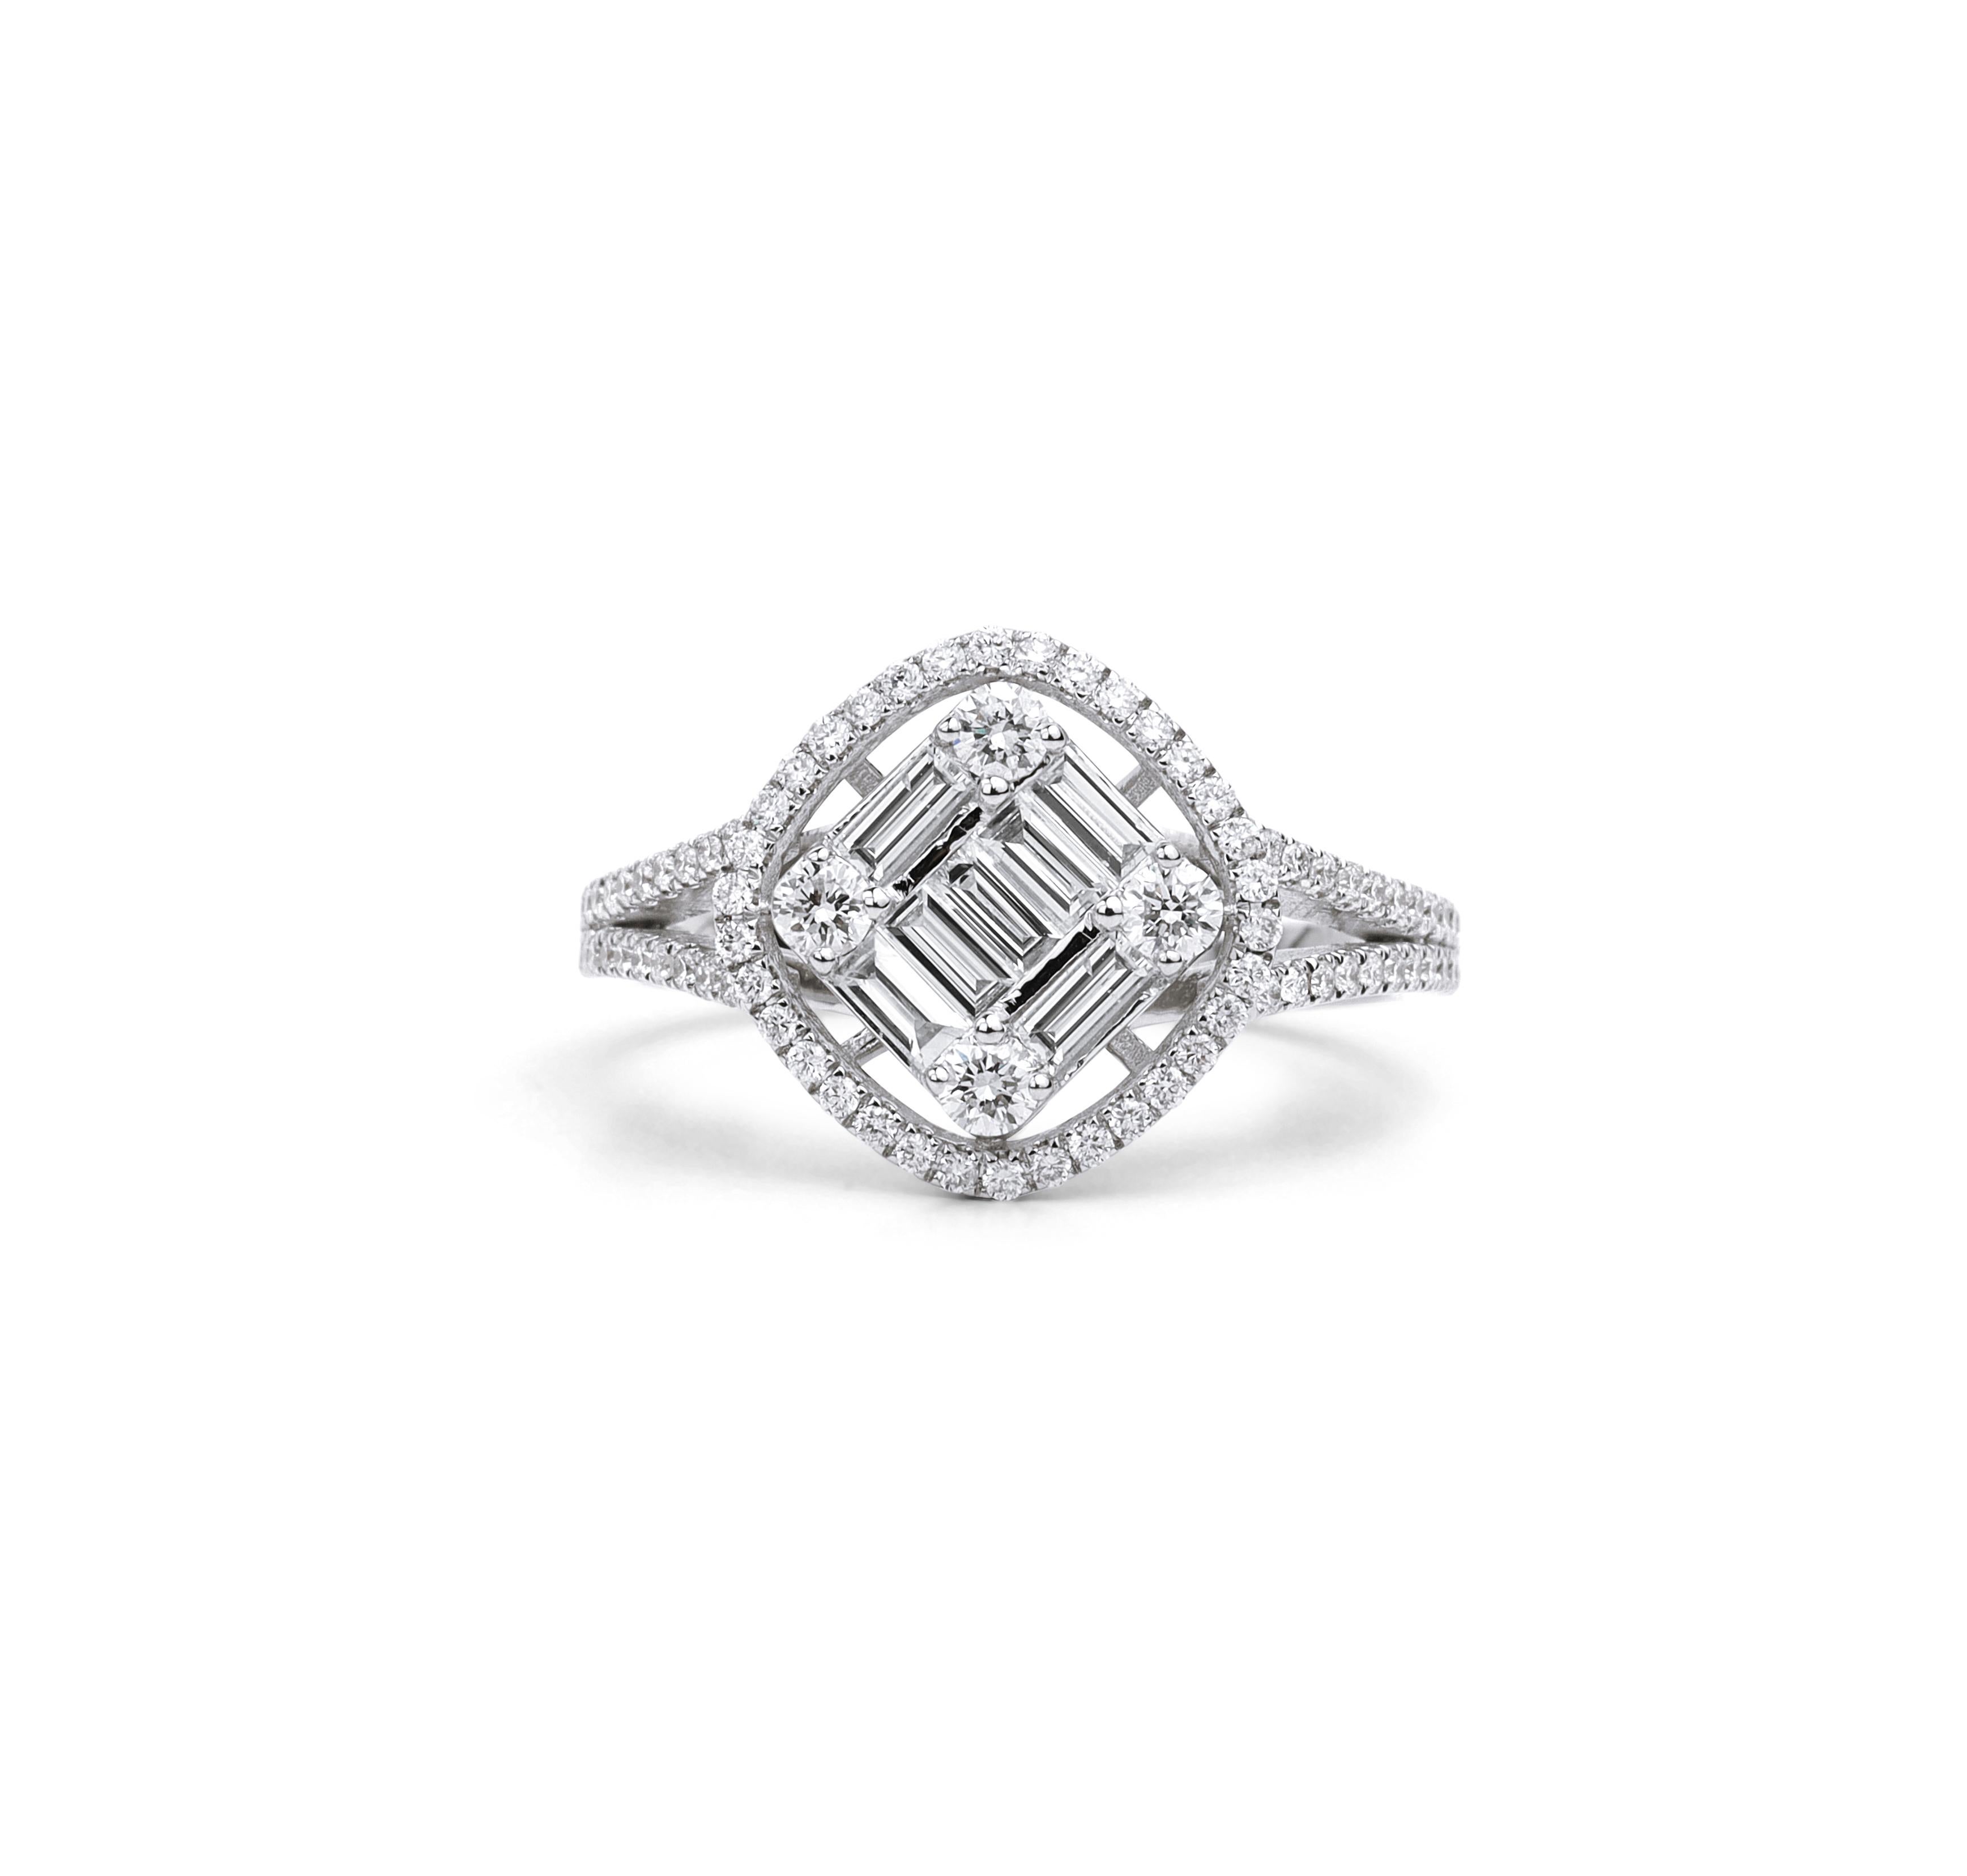 Art Deco Diamant Baguetteschliff Ring Illusion Einstellung, 1,1 TCW F G VS Diamant Ring


Erhältlich in 18 Karat Weißgold.

Das gleiche Design kann auch mit anderen Edelsteinen auf Anfrage hergestellt werden.

Einzelheiten zum Produkt:

- Massives